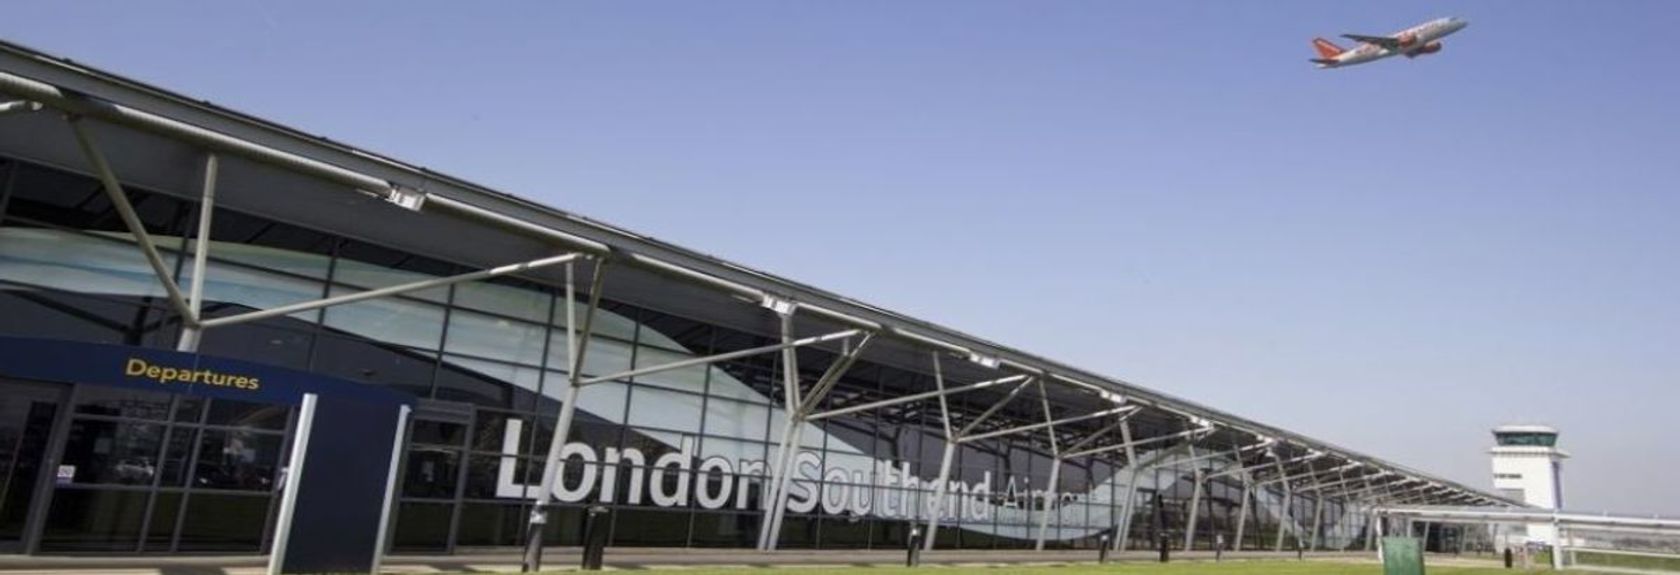 London Southend Airport está localizado no condado de Essex, ao norte de Southend-on-Sea and East London. O aeroporto é um dos seis aeroportos oficiais de Londres e acessível por estrada através da A127 Southend Arterial Road. O terminal do aeroporto fecha 45 minutos após o desembarque do último voo do dia e abre novamente às 04.00.